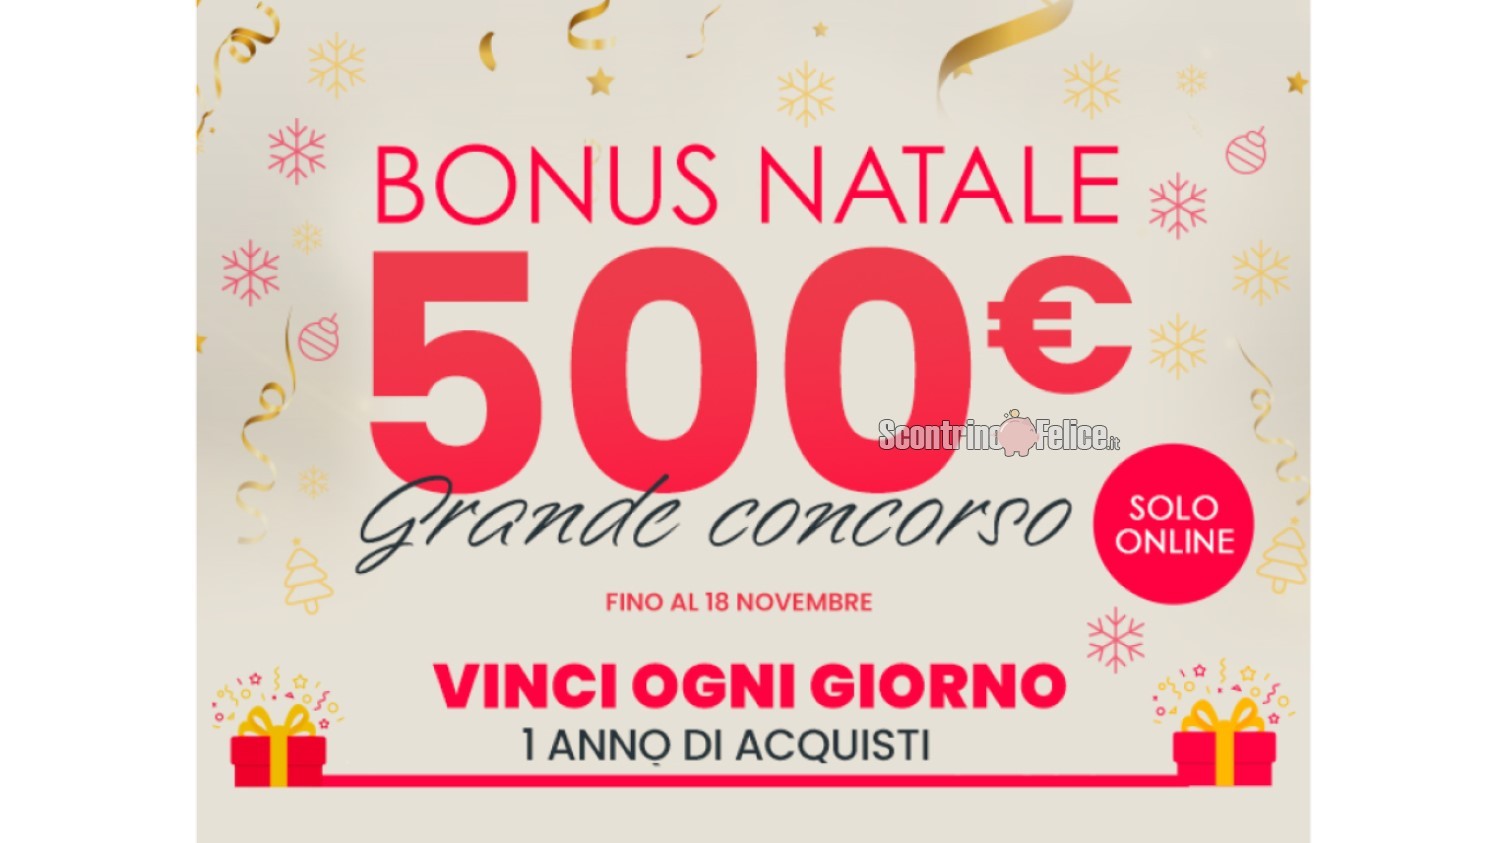 Concorso IBS e La Feltrinelli "Bonus Natale 500€": vinci gift card da 500 euro!